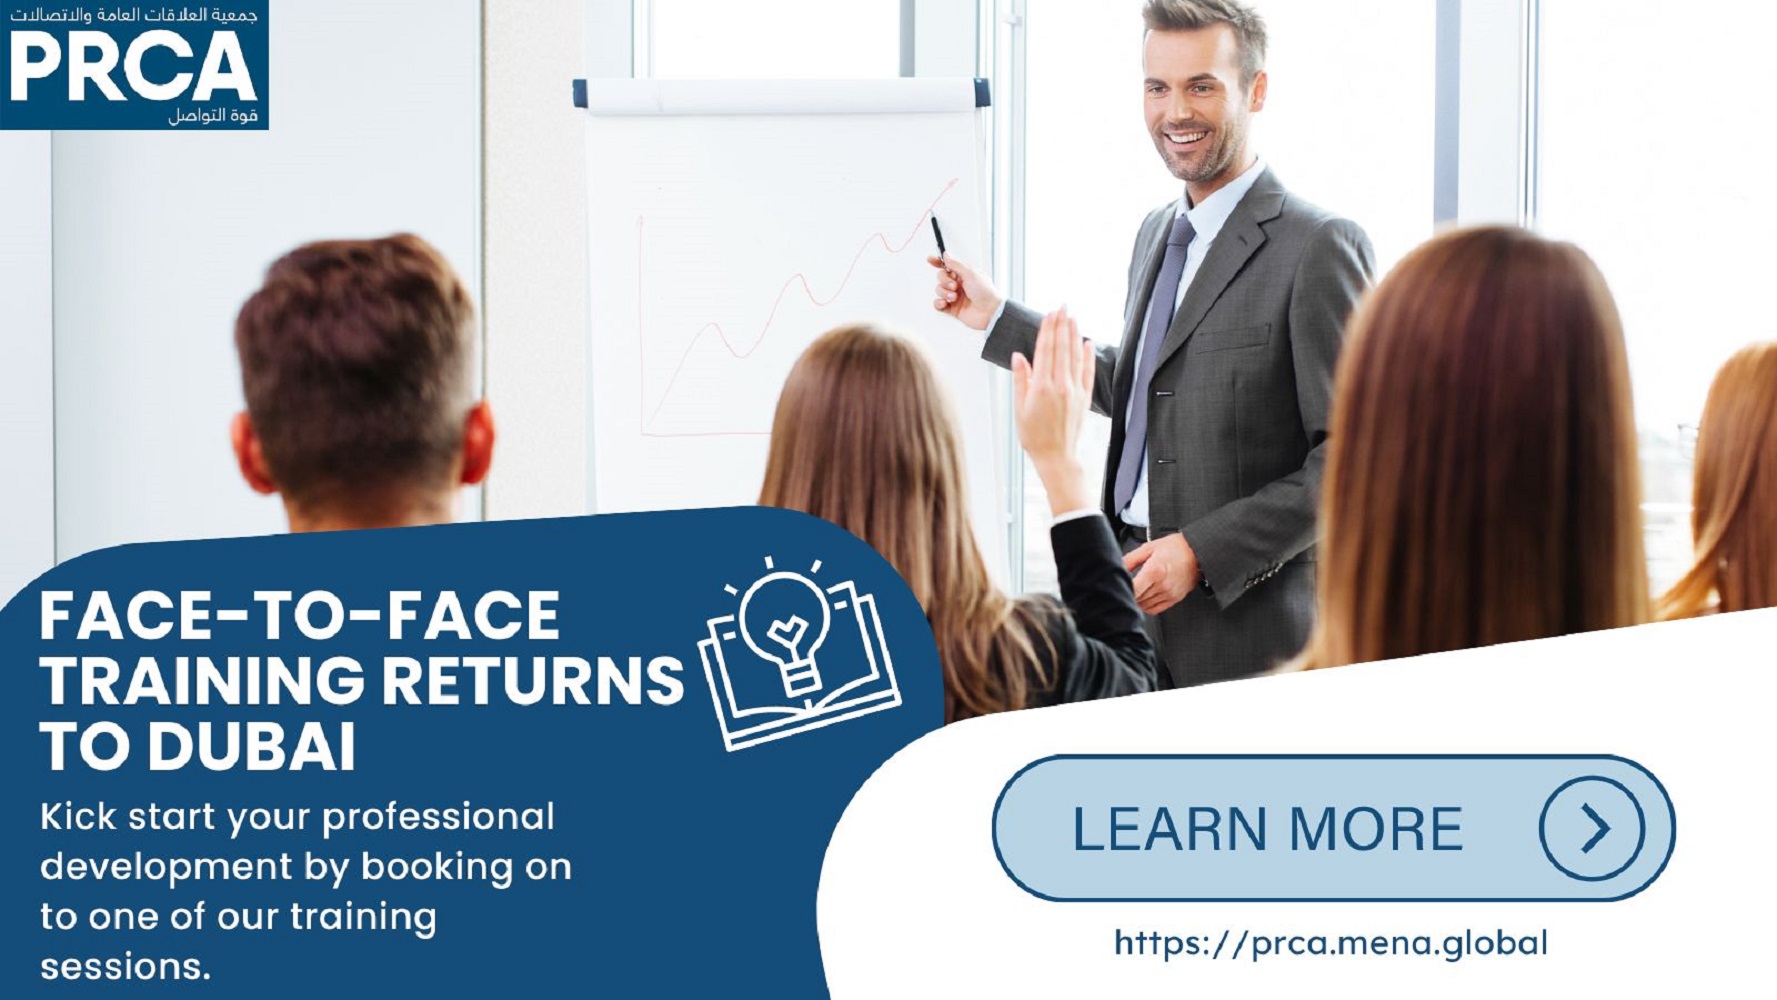 PRCA Face-to-Face Training Returns to Dubai